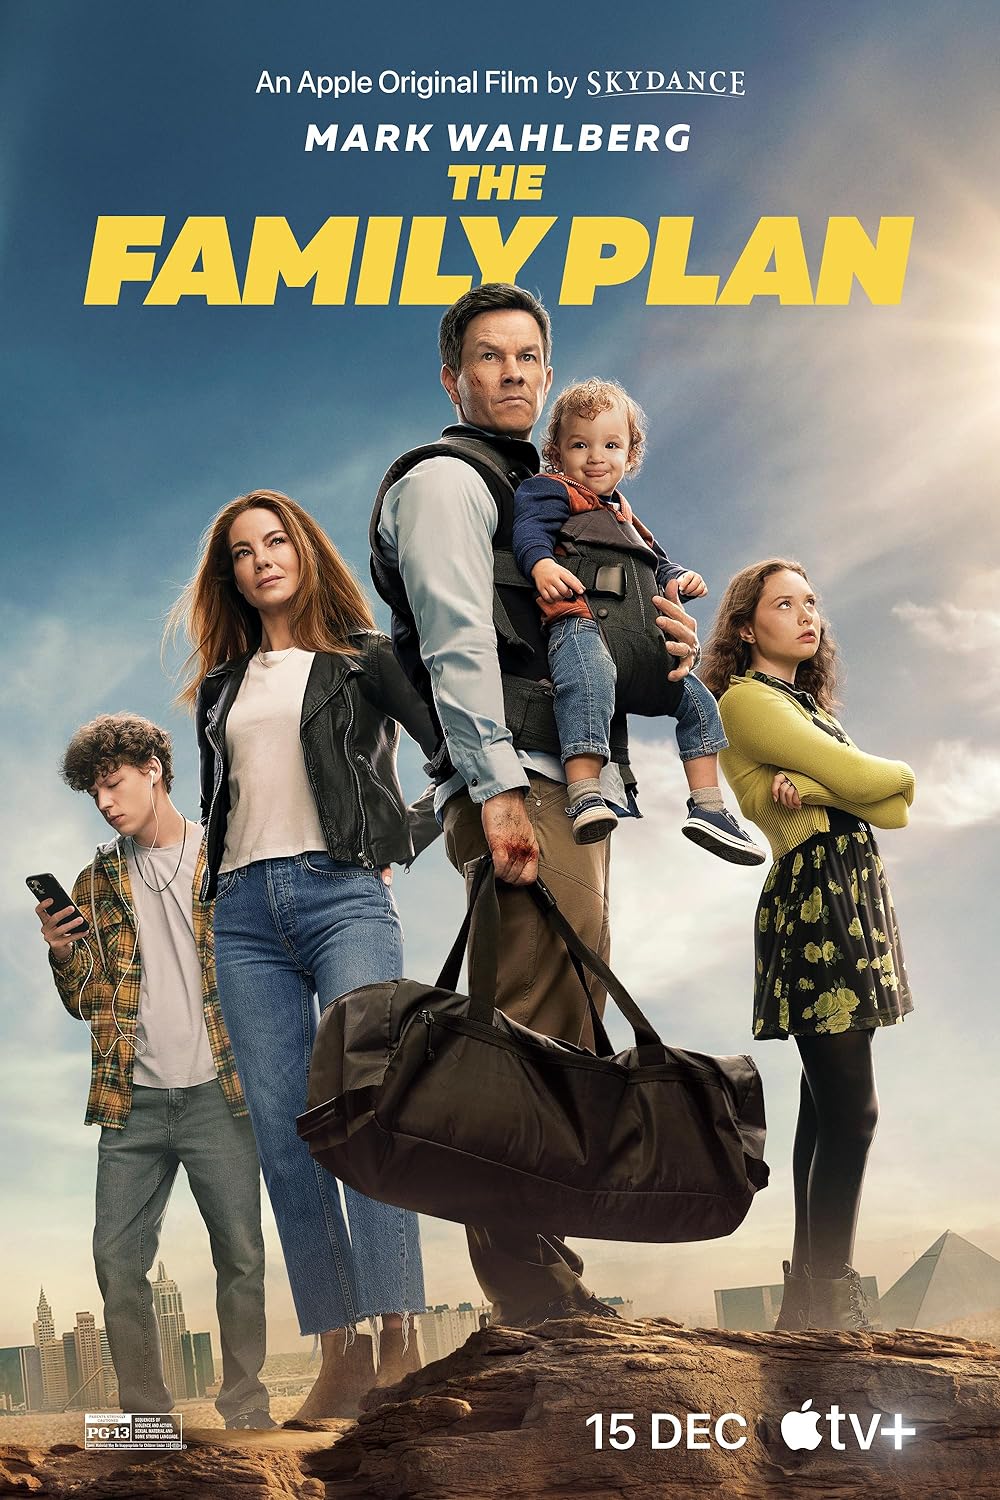 The Family Plan (December 15) - Streaming on Apple TV+